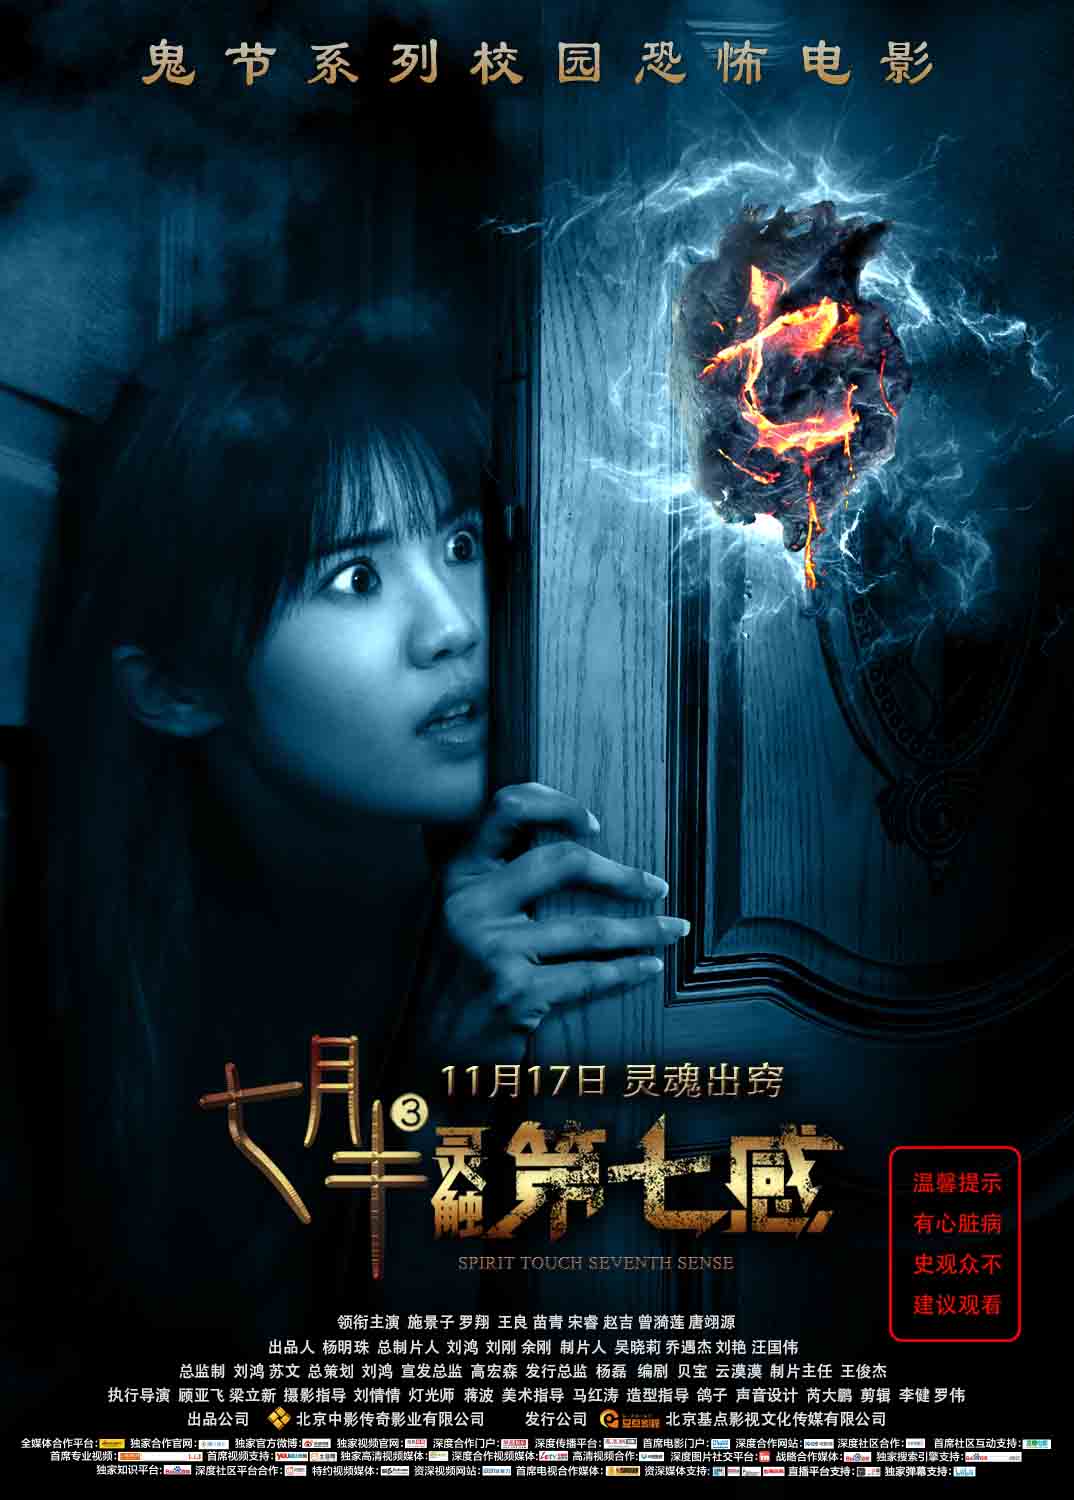 搜狐娱乐讯 鬼节系列校园恐怖电影《七月半3:灵触第七感》即将于11月